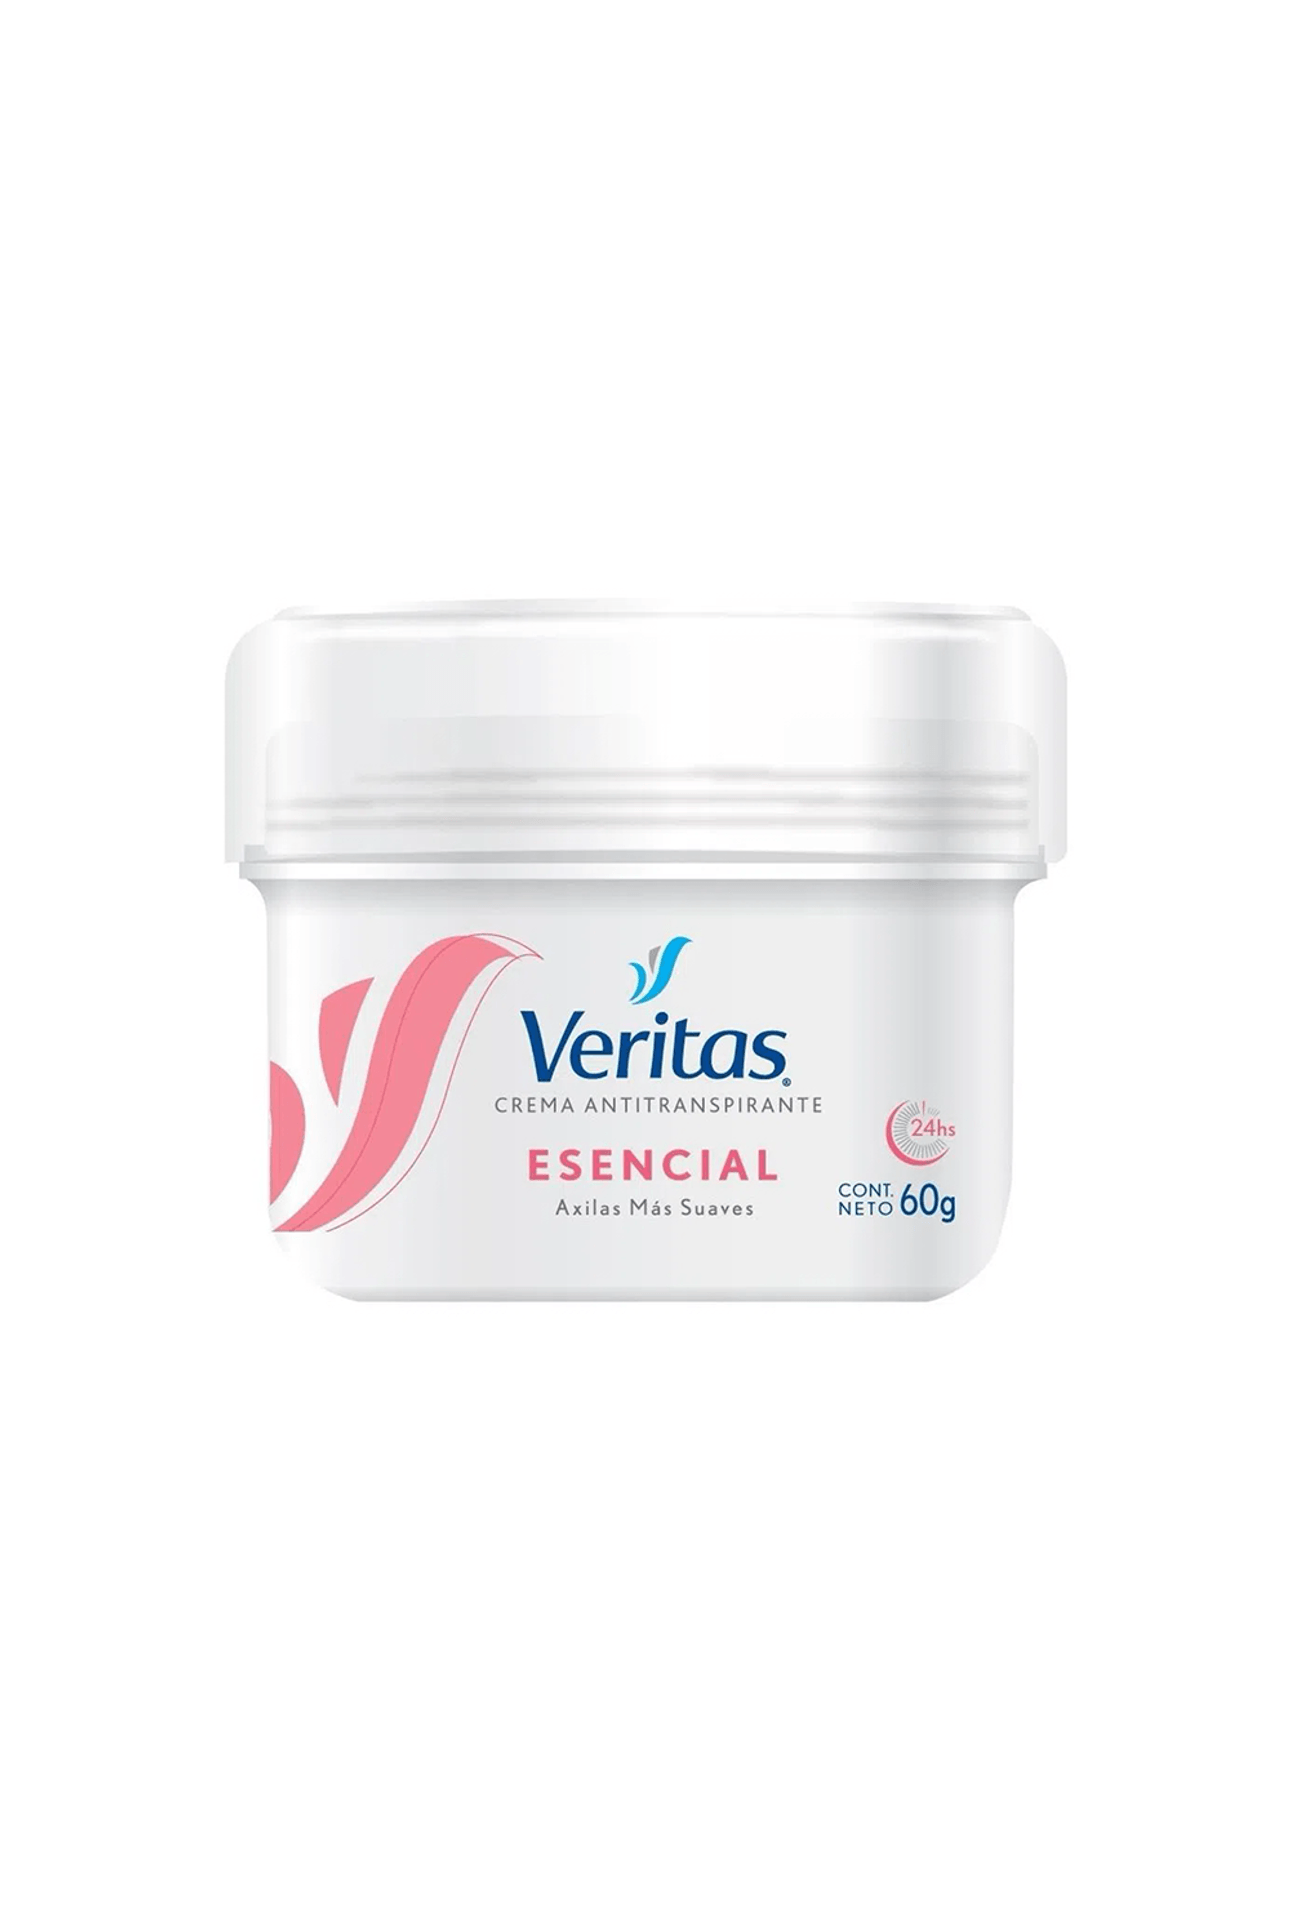 Veritas-Antitranspirante-en-Crema-Esencial-x-60-gr-7791520012187_img1